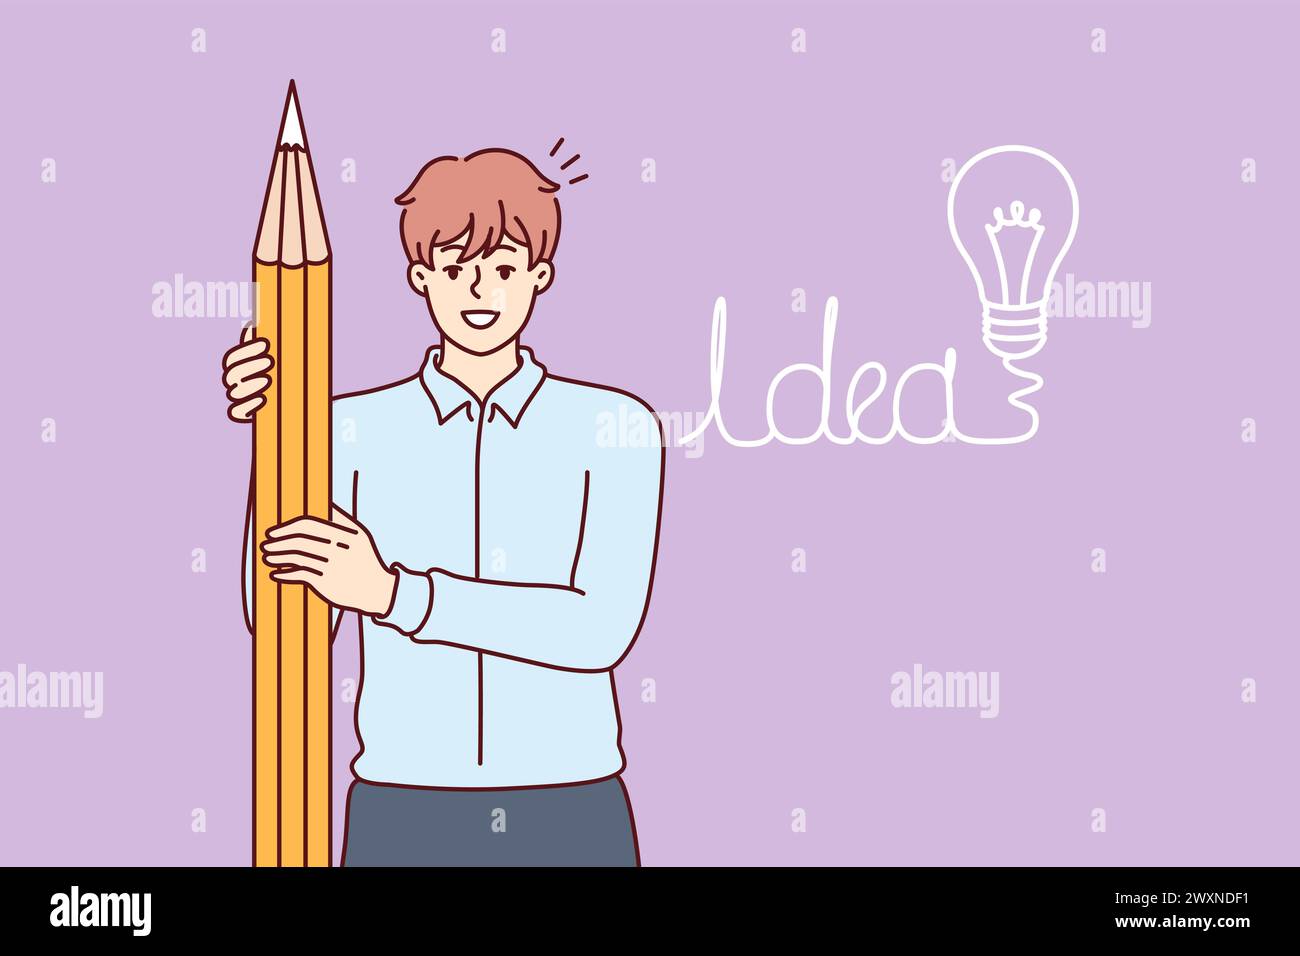 Der Geschäftsmann hat sich eine Idee ausgedacht, Kunden anzulocken und einen riesigen Bleistift zu halten, der neben dem Zeichnen einer Glühbirne steht. Guy Student freut sich über die Idee, eine erfolgreiche Abschlussarbeit zu schreiben Stock Vektor